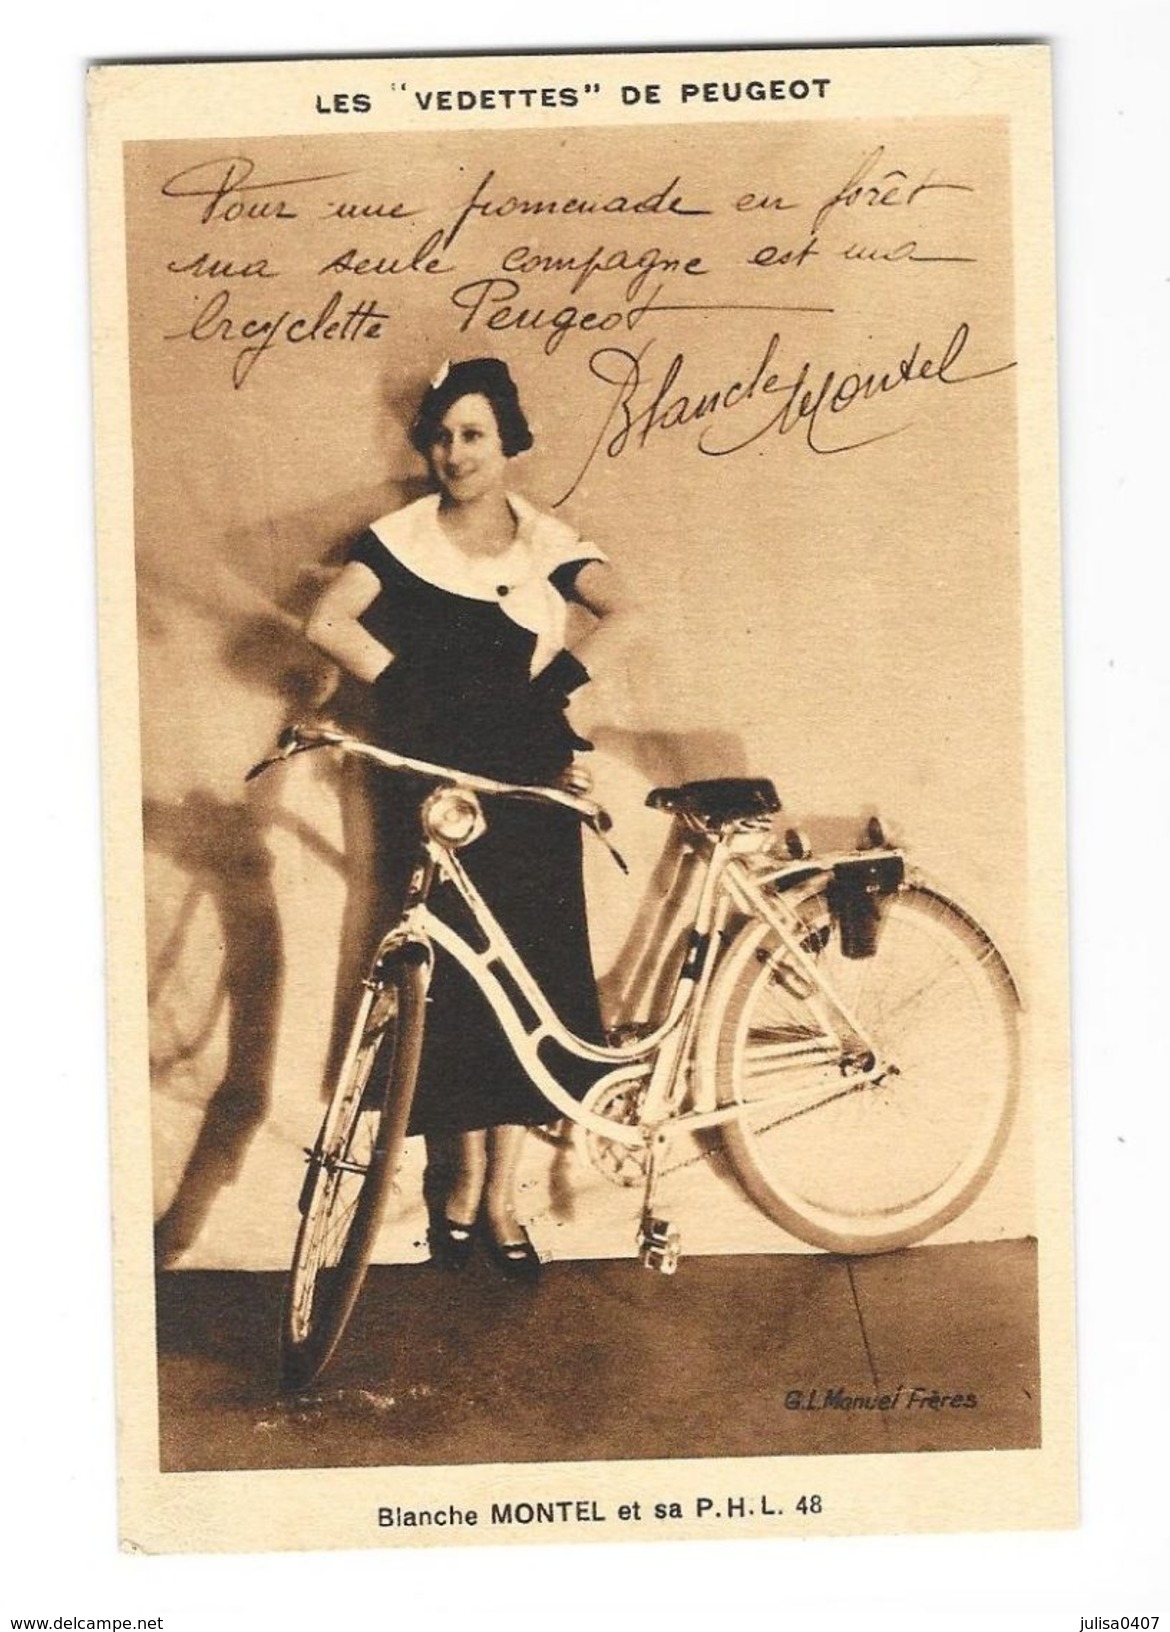 BICYCLETTE PEUGEOT PHL 48 Carte Publicitaire Blanche Montel - Cycling